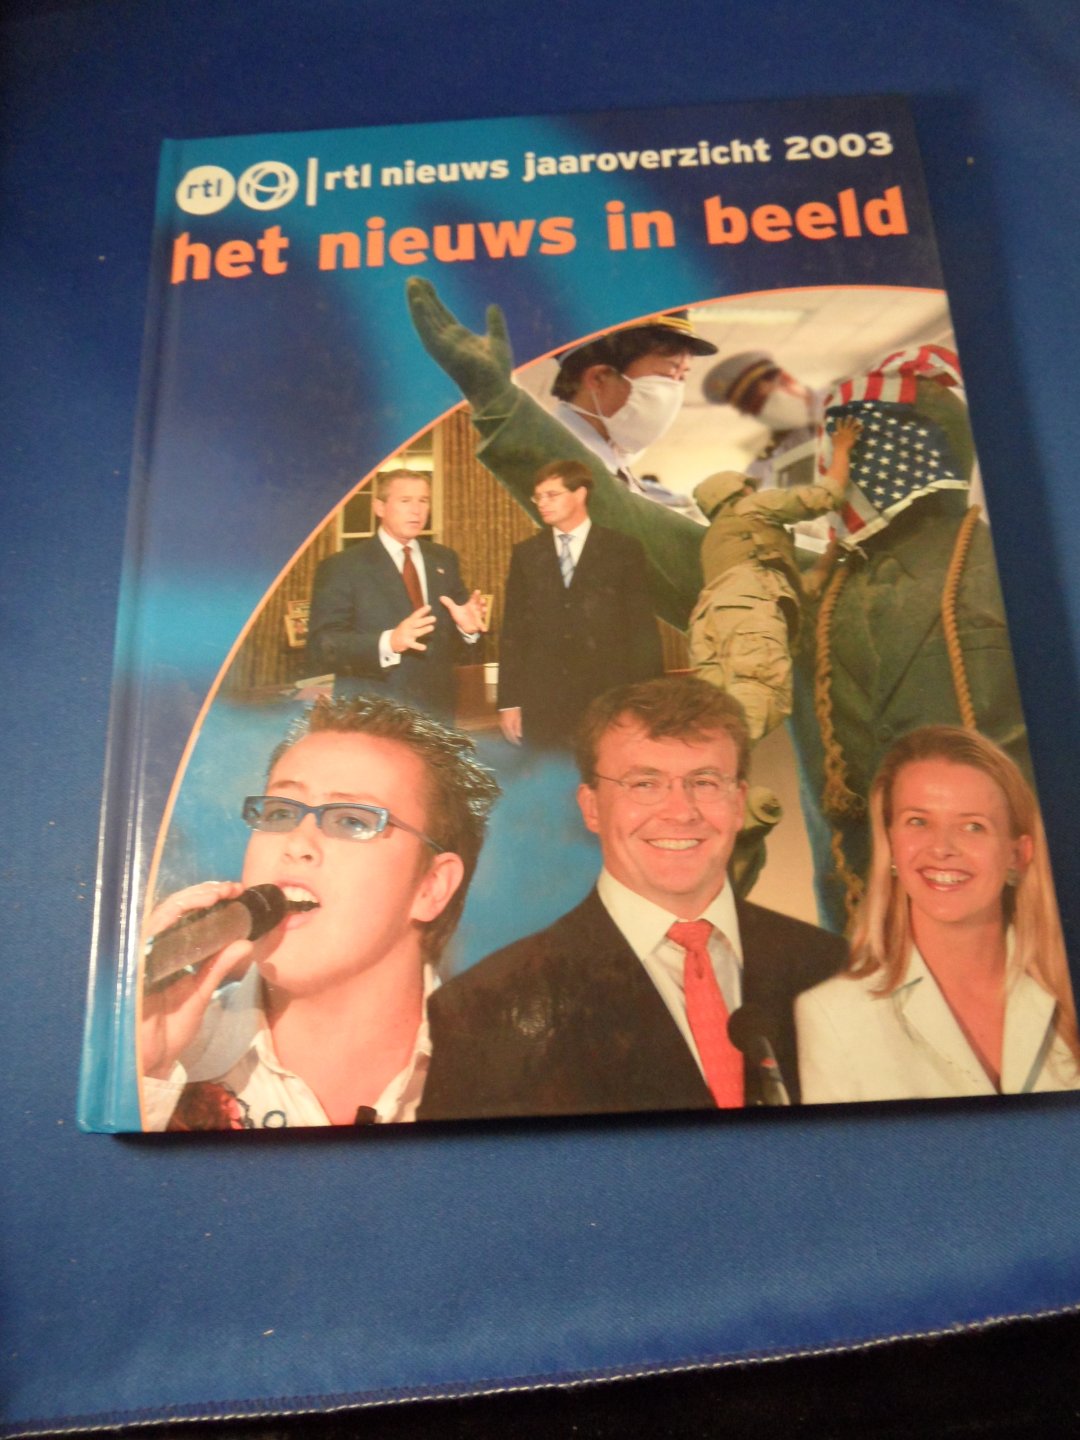 Veerman & Meijwaard - Het nieuws in beeld. RTL nieuws jaaroverzicht 2003